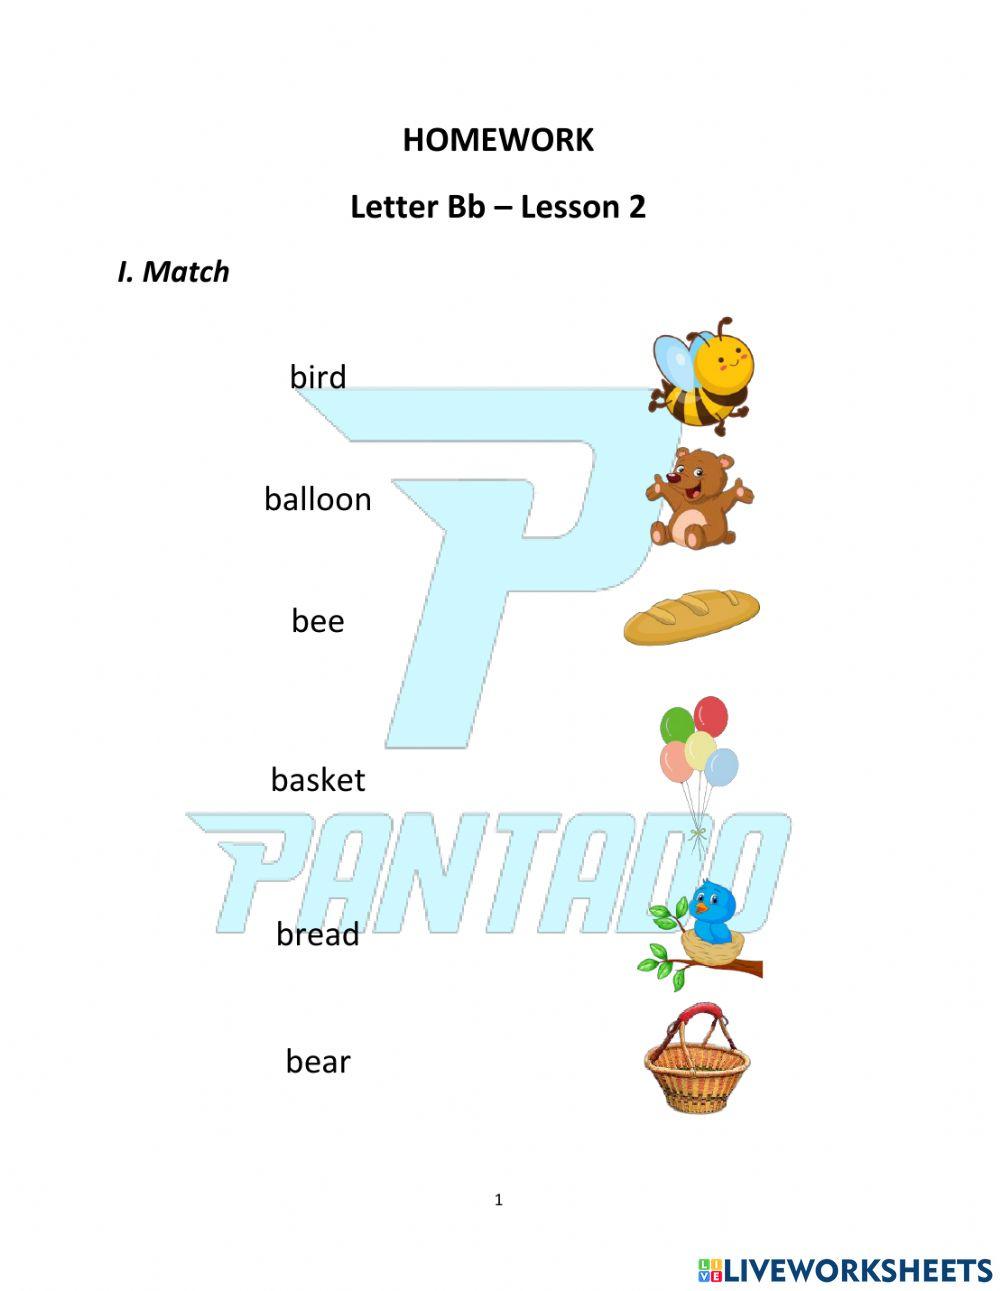 Unit 2: Letter B